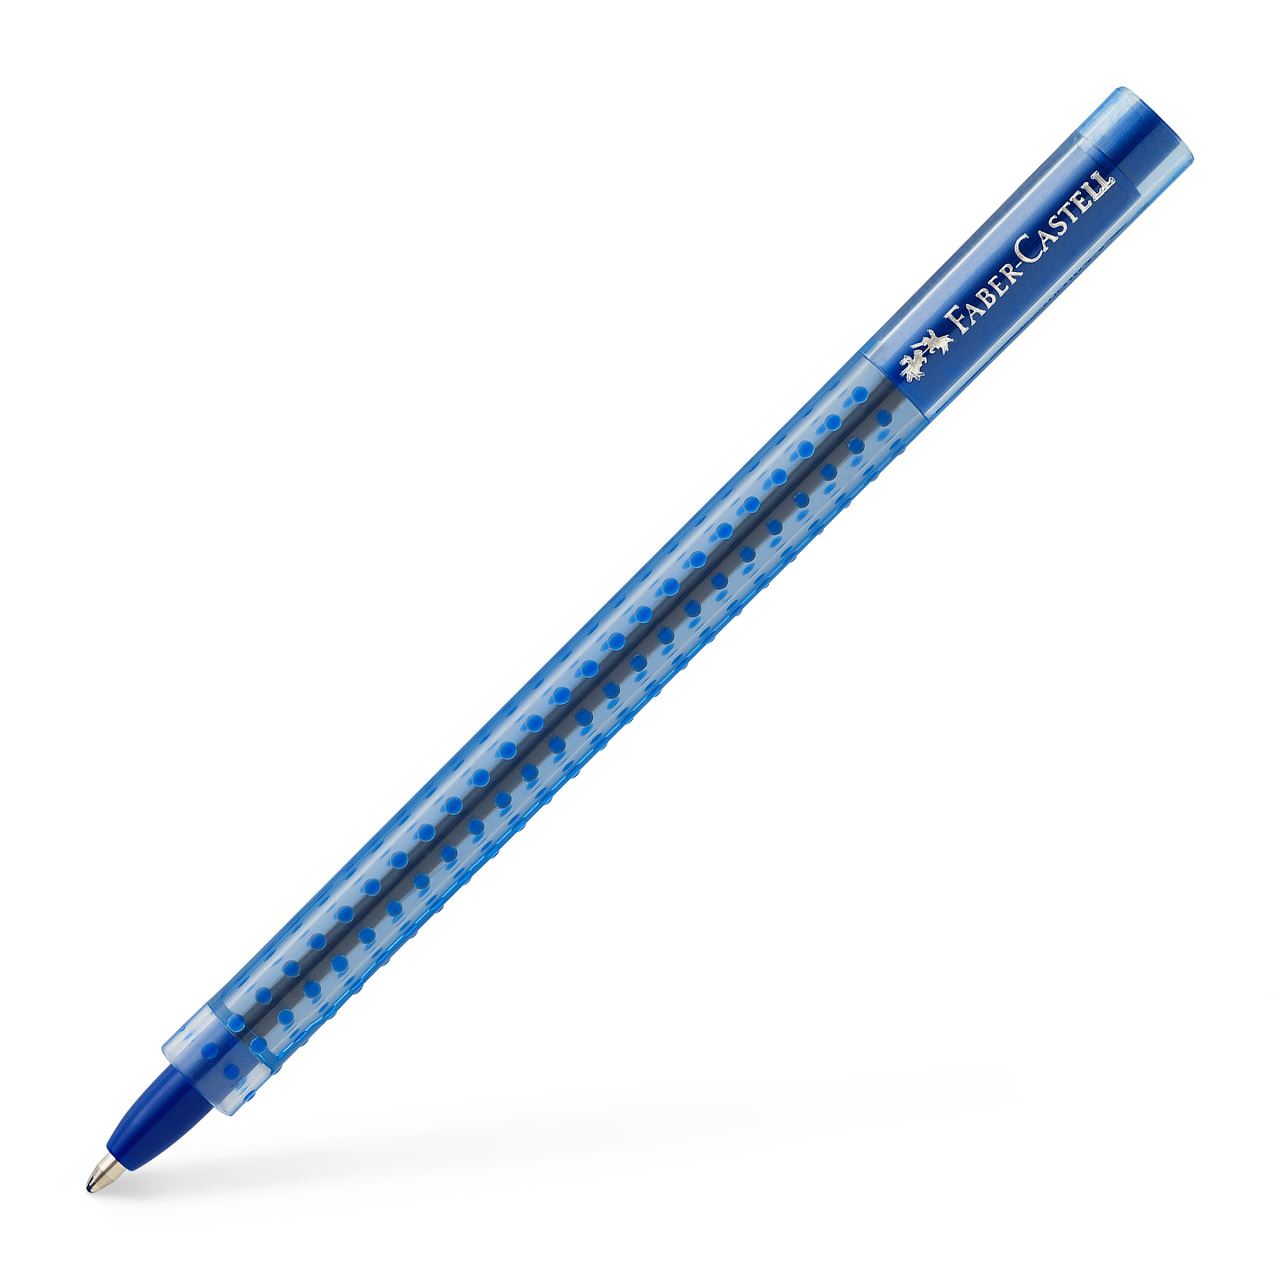 Faber-Castell - Grip 2020 ballpoint pen, M, blue